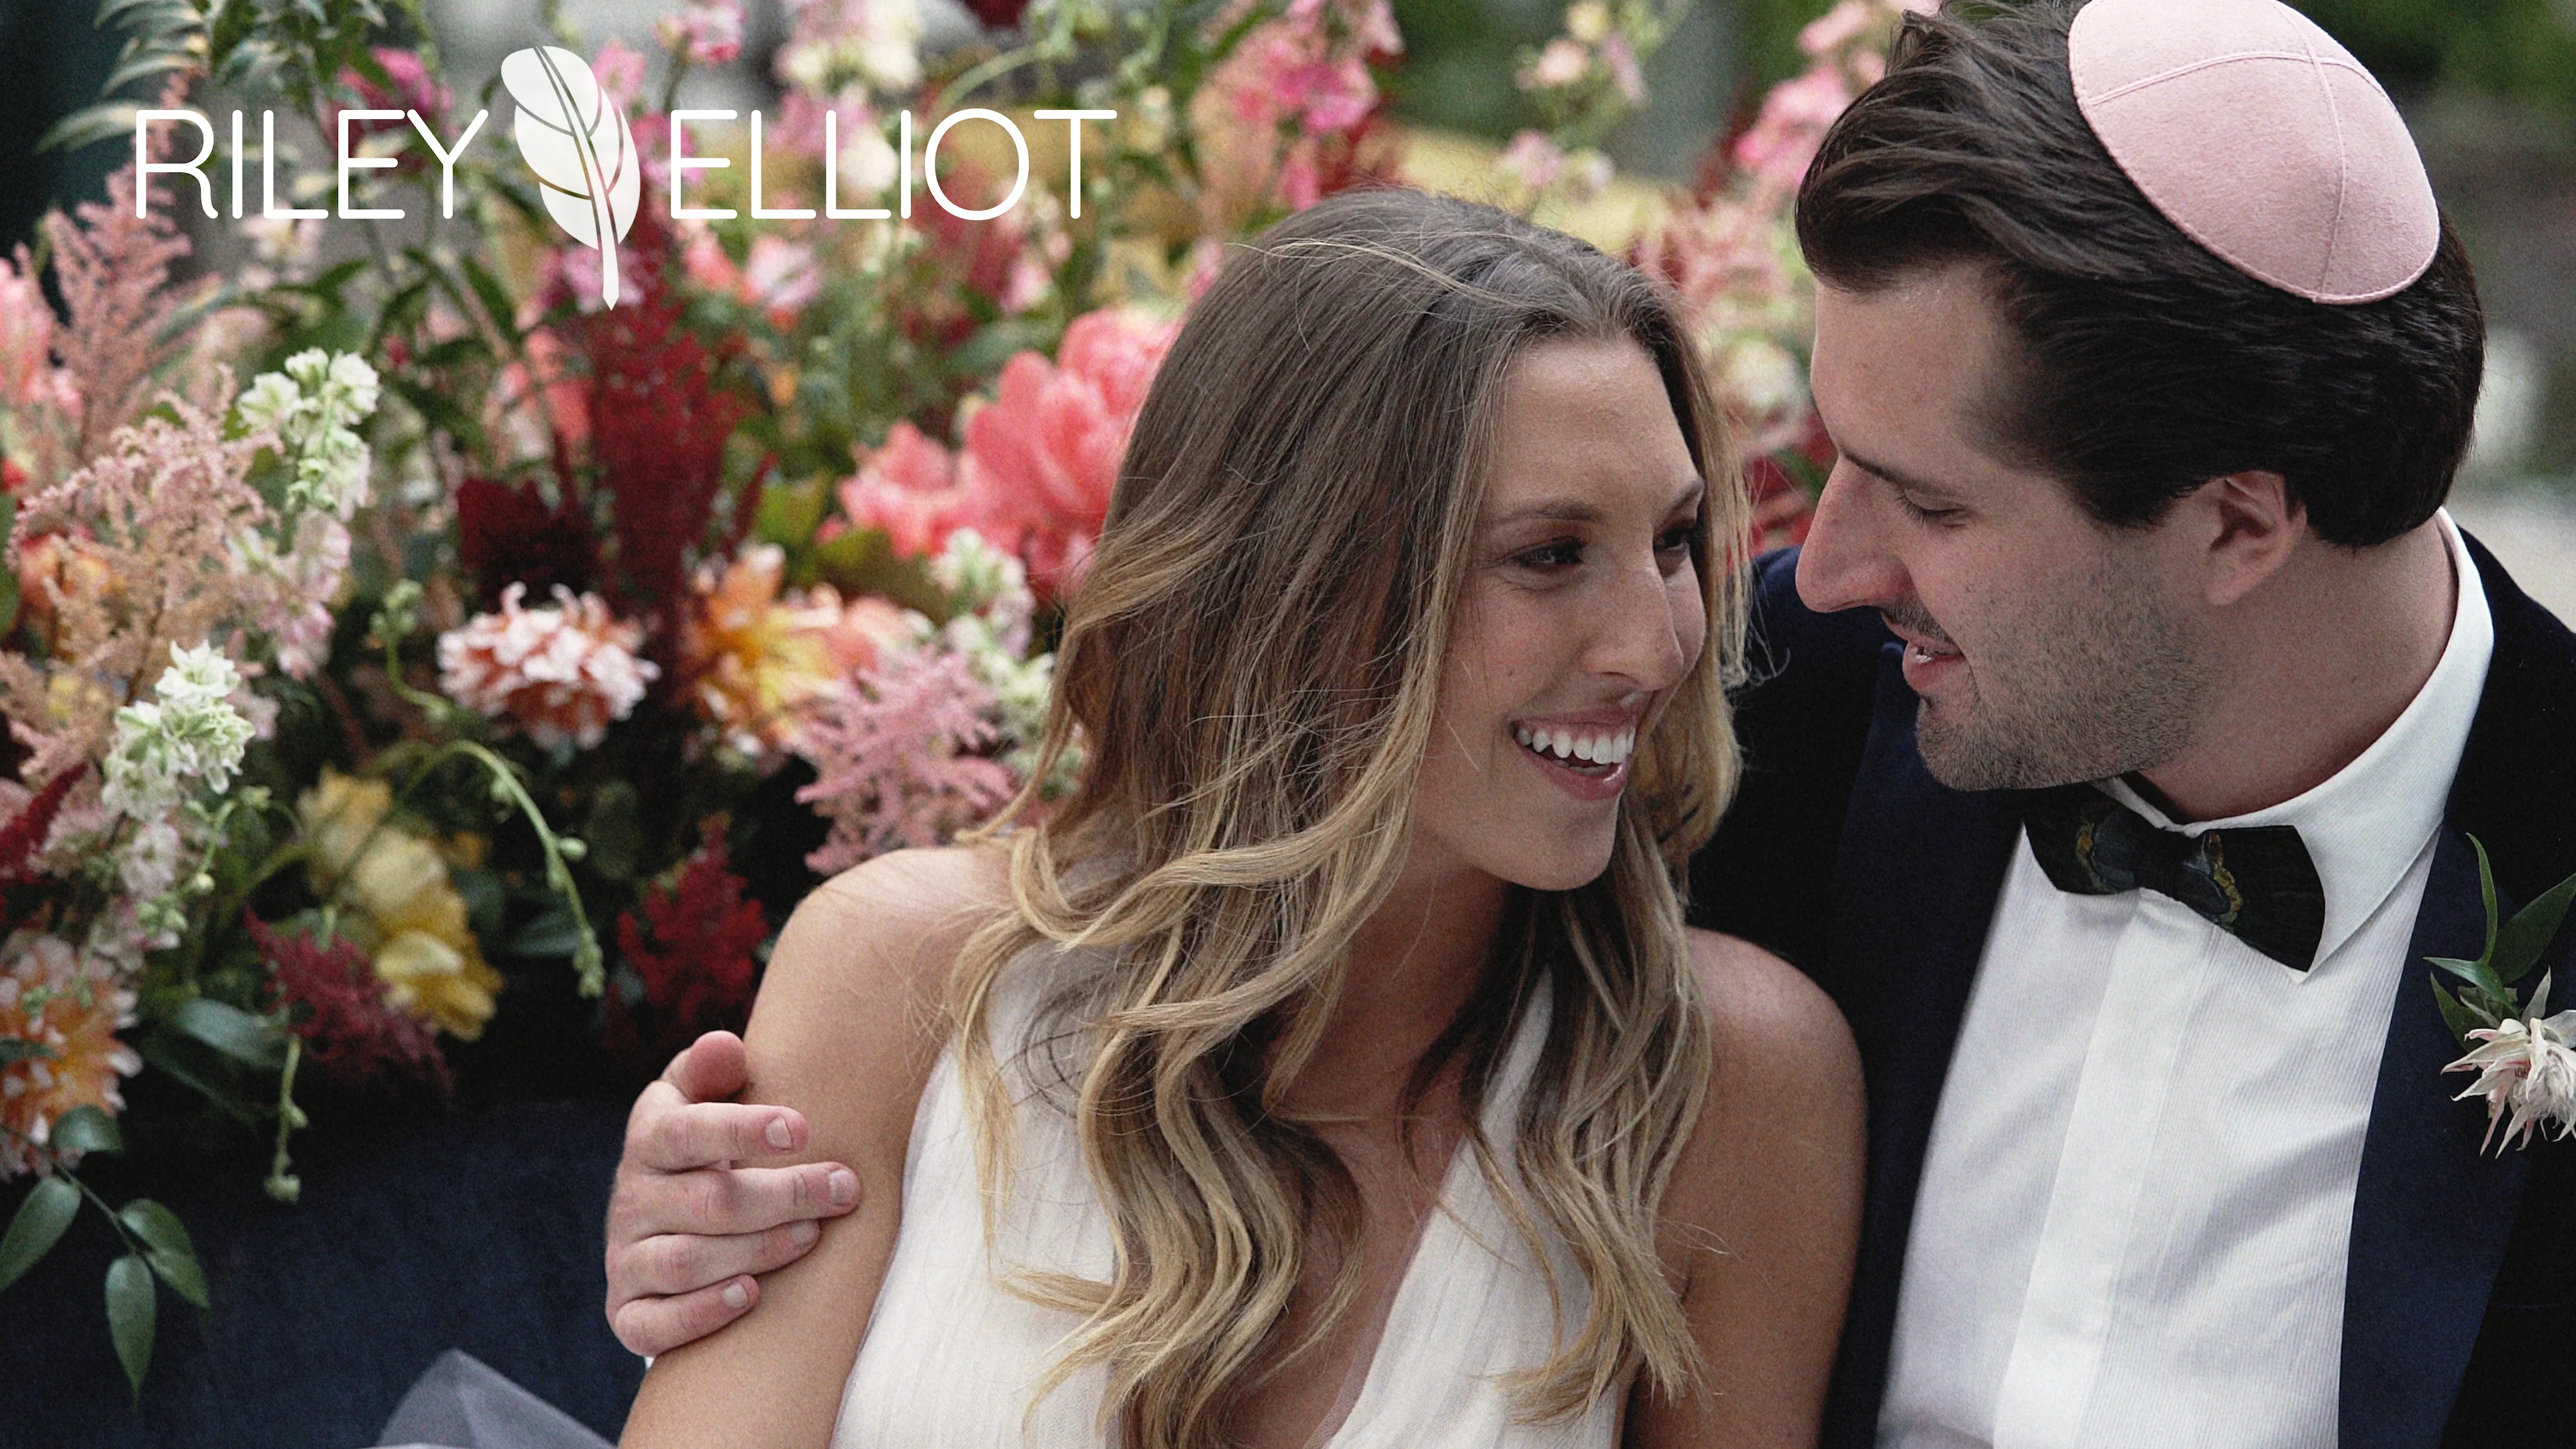 Riley & Elliot  Gorgeous, crazy fun Austin wedding video on Vimeo